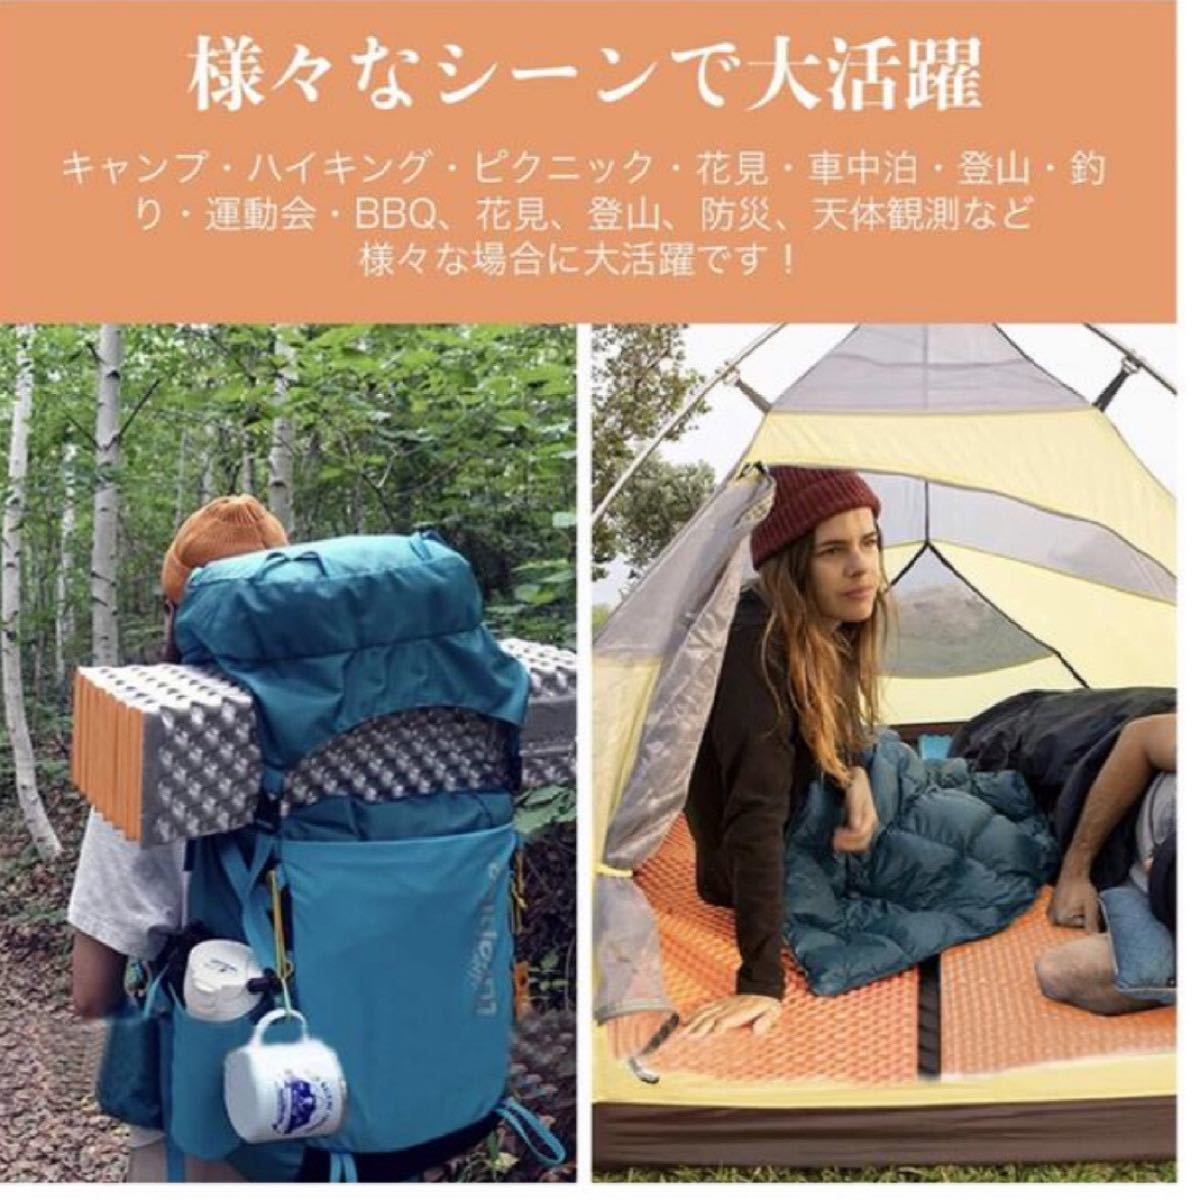 キャンプマット 寝袋用マット レジャー アウトドアマット IXPE素材 レジャーシート テント泊 超軽量 保温 寝袋用・テント泊